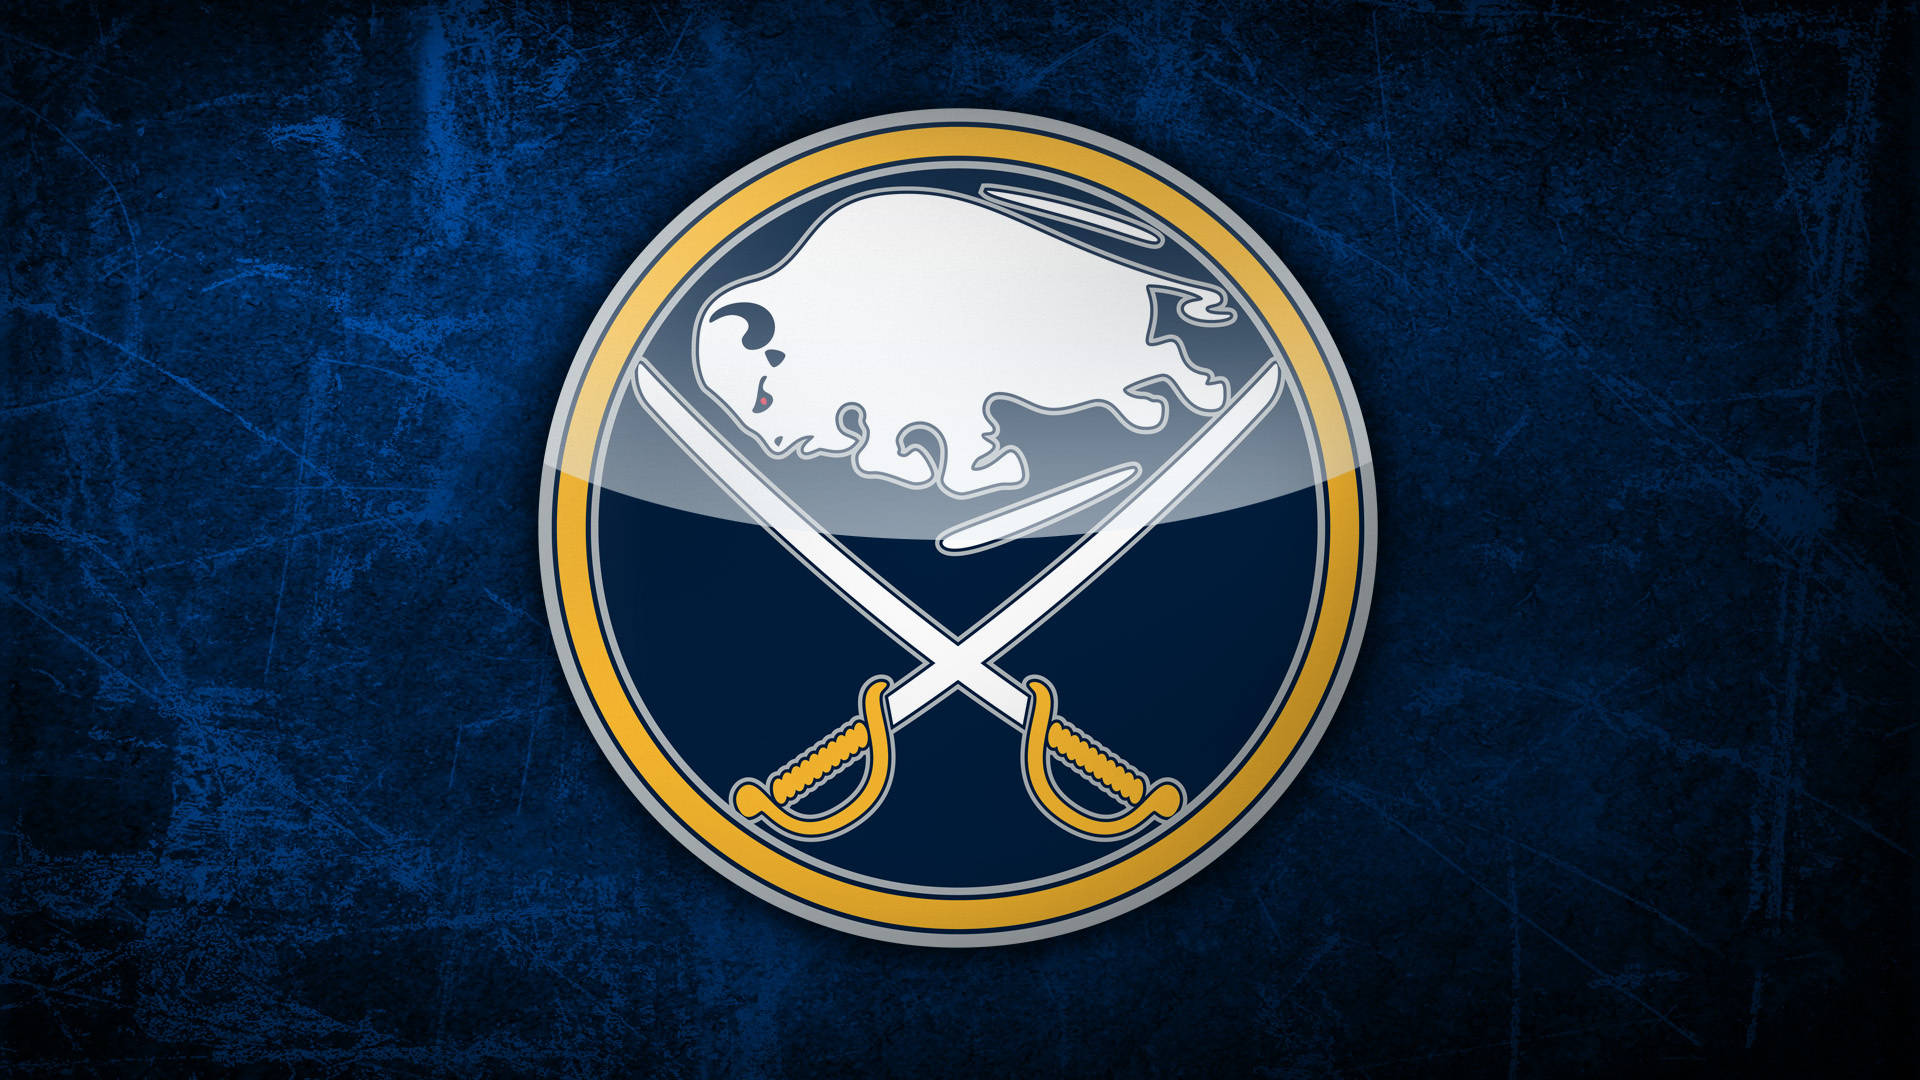 Buffalo Sabres' Emblem on Dark Blue Background Wallpaper